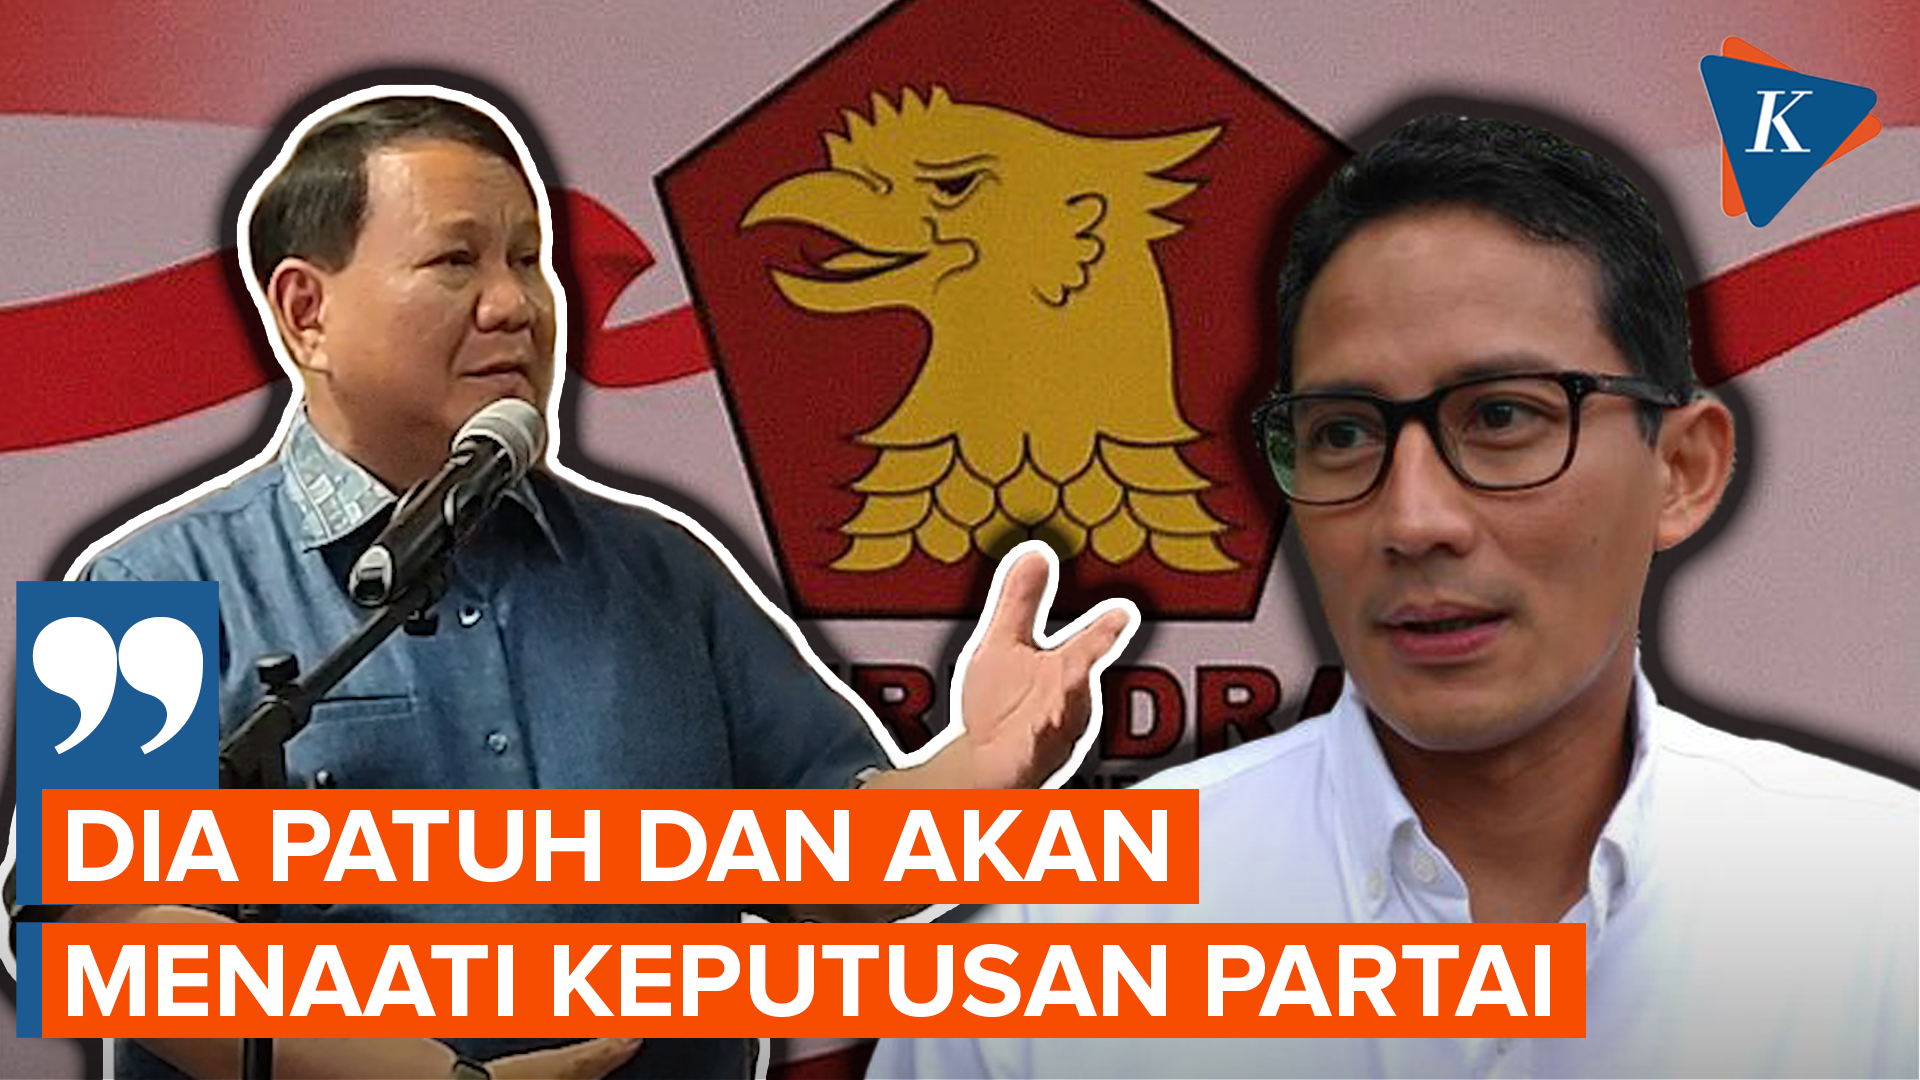 Respons Prabowo soal Sandiaga Uno yang Dijodohkan dengan Anies Baswedan